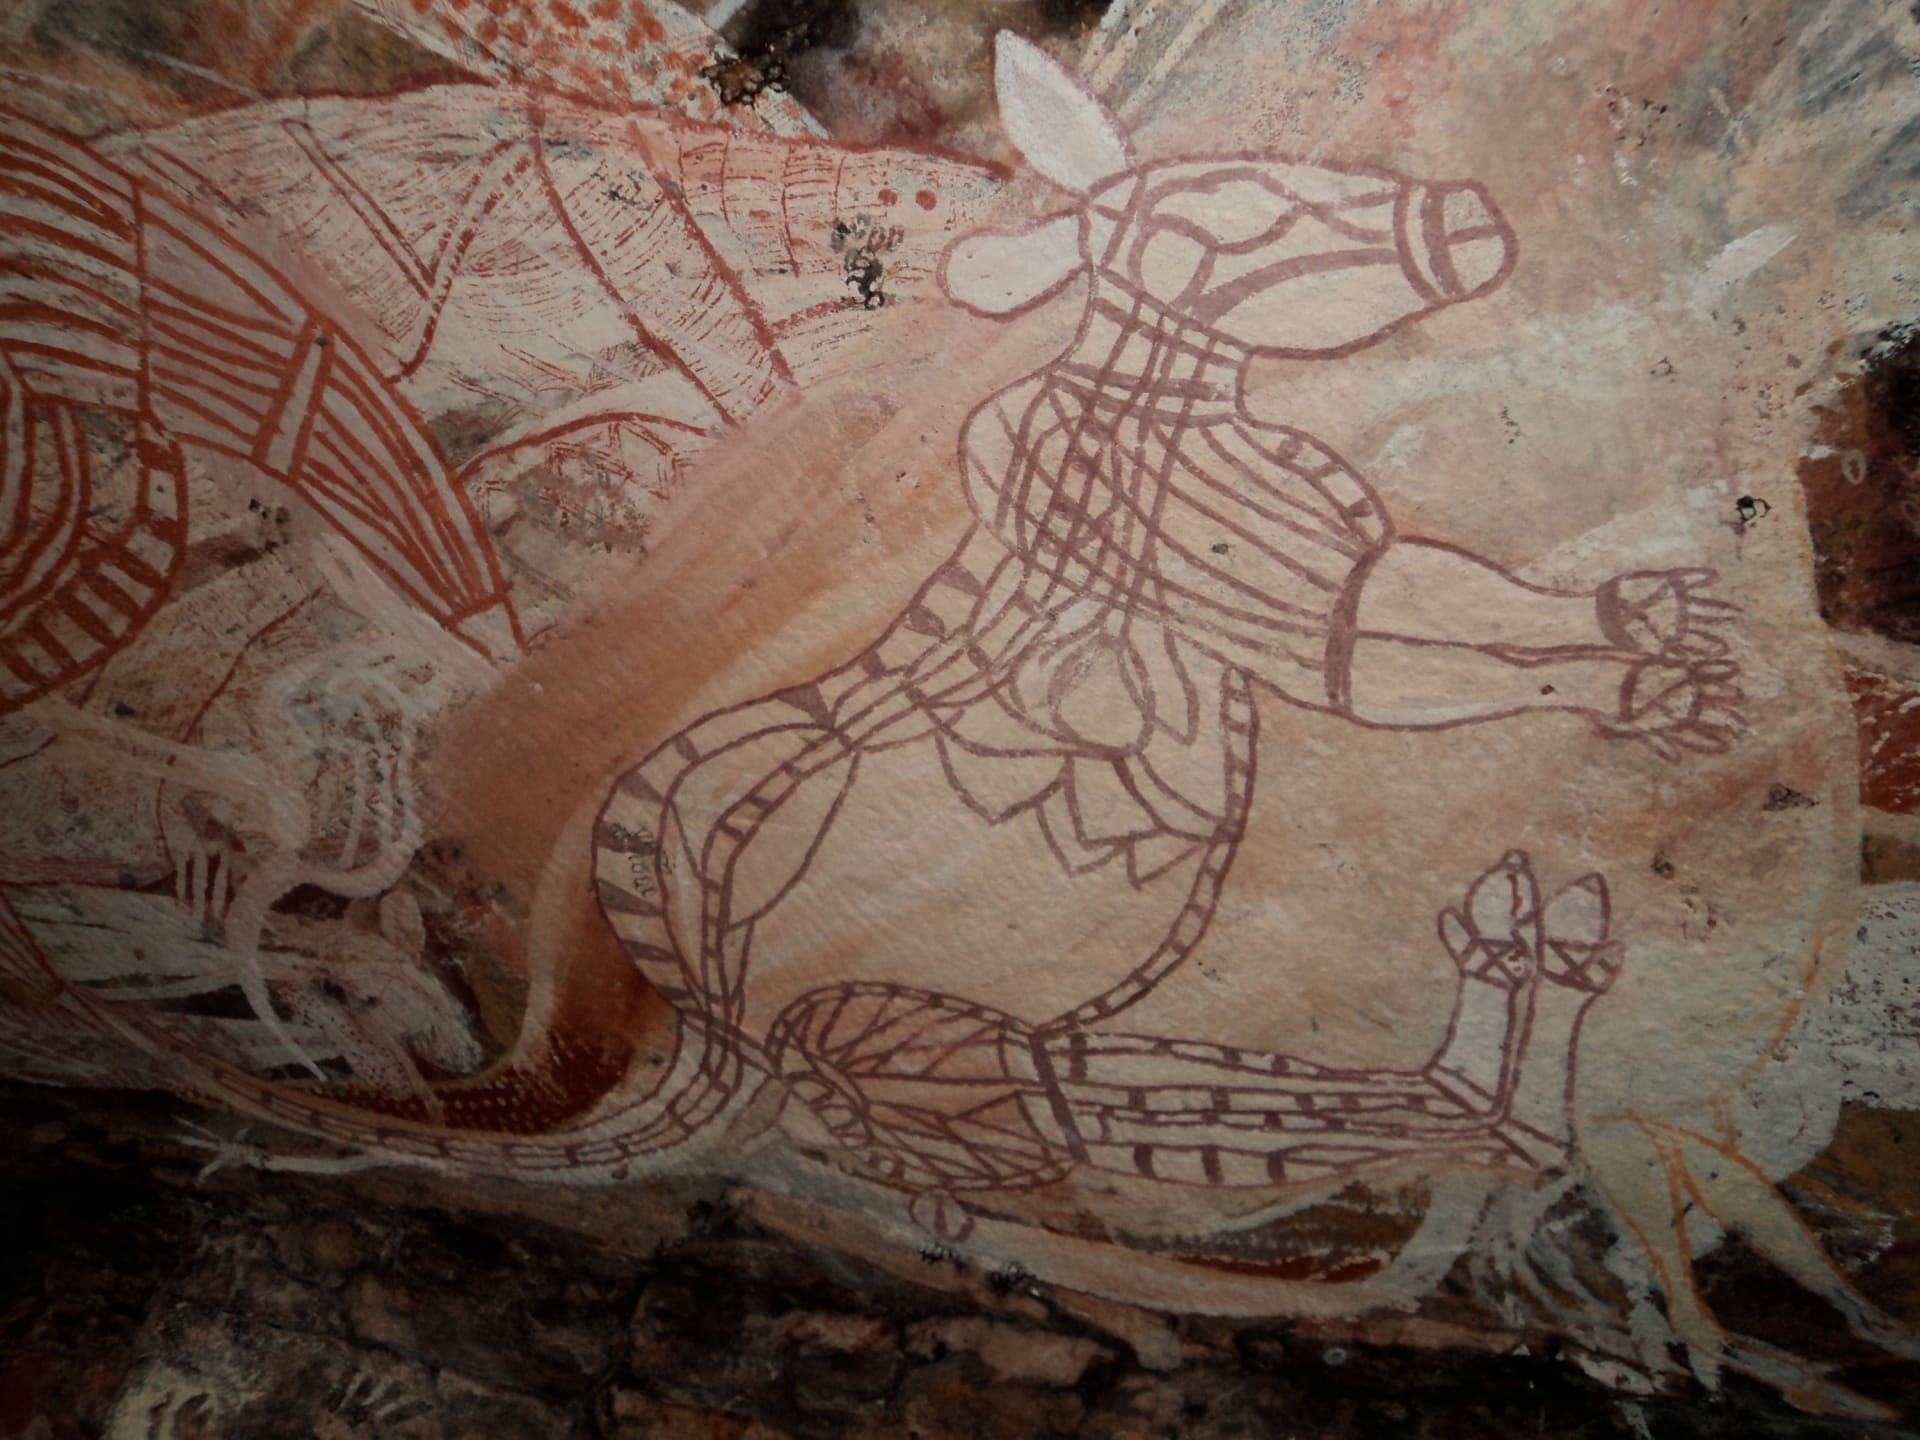 Austrálie - malby původních obyvatel